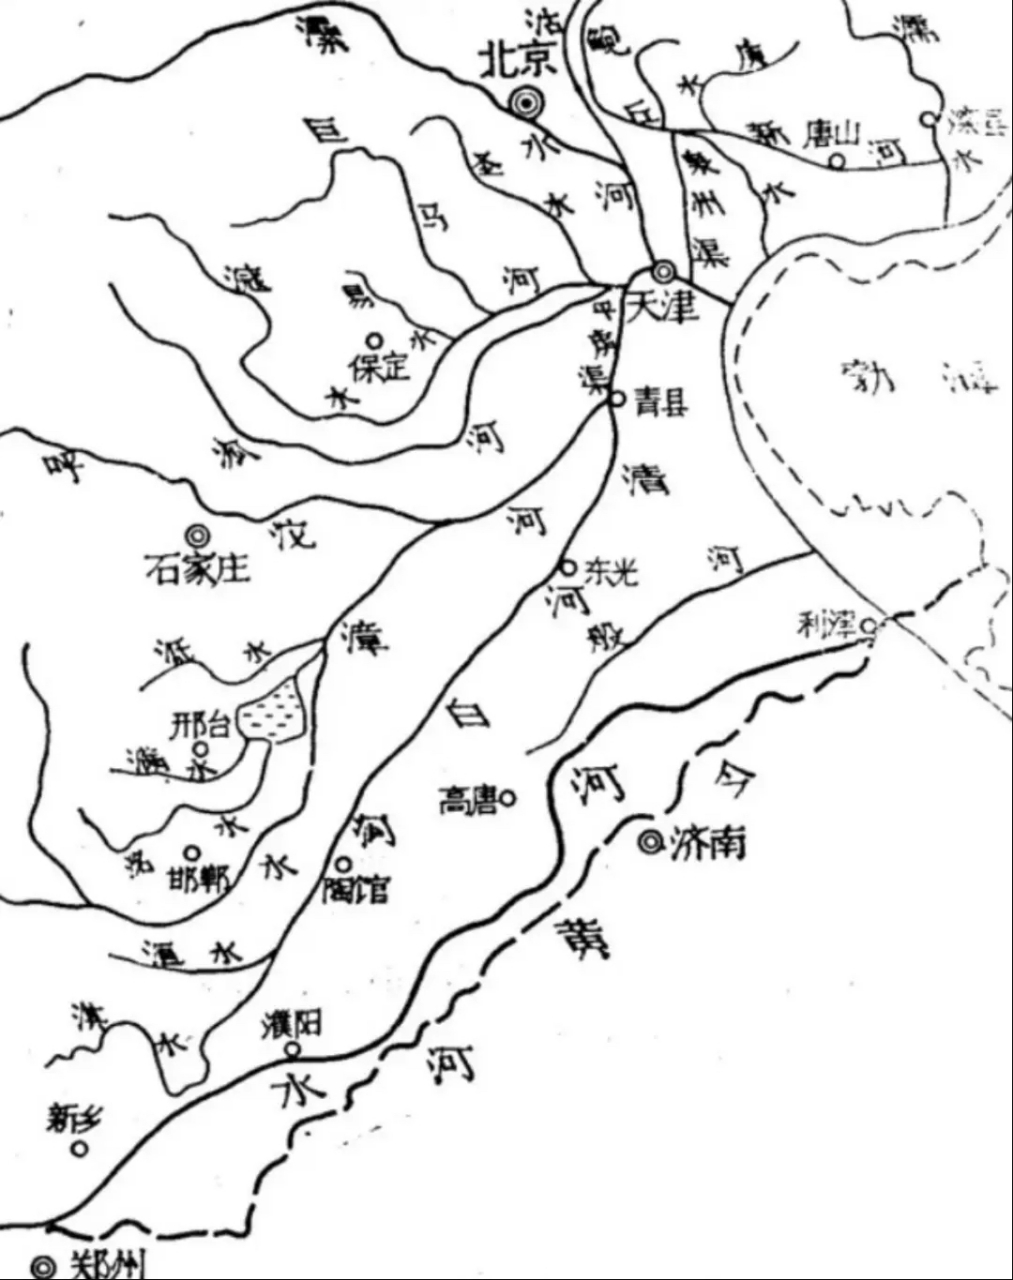 京津冀地区河流分布图,大部分河流经过天津汇入渤海